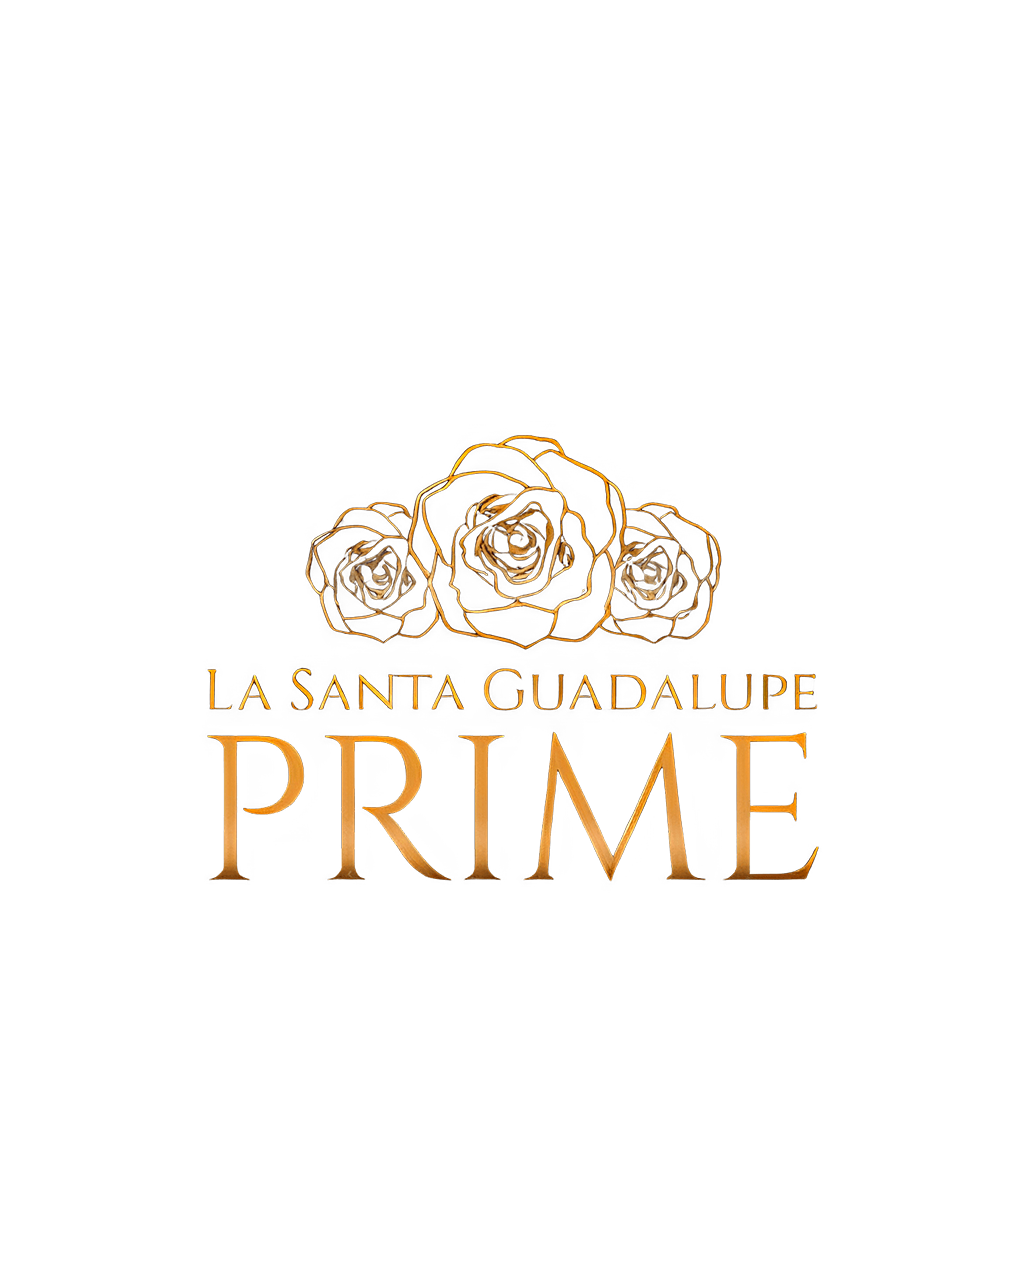 La Santa Guadalupe Prime